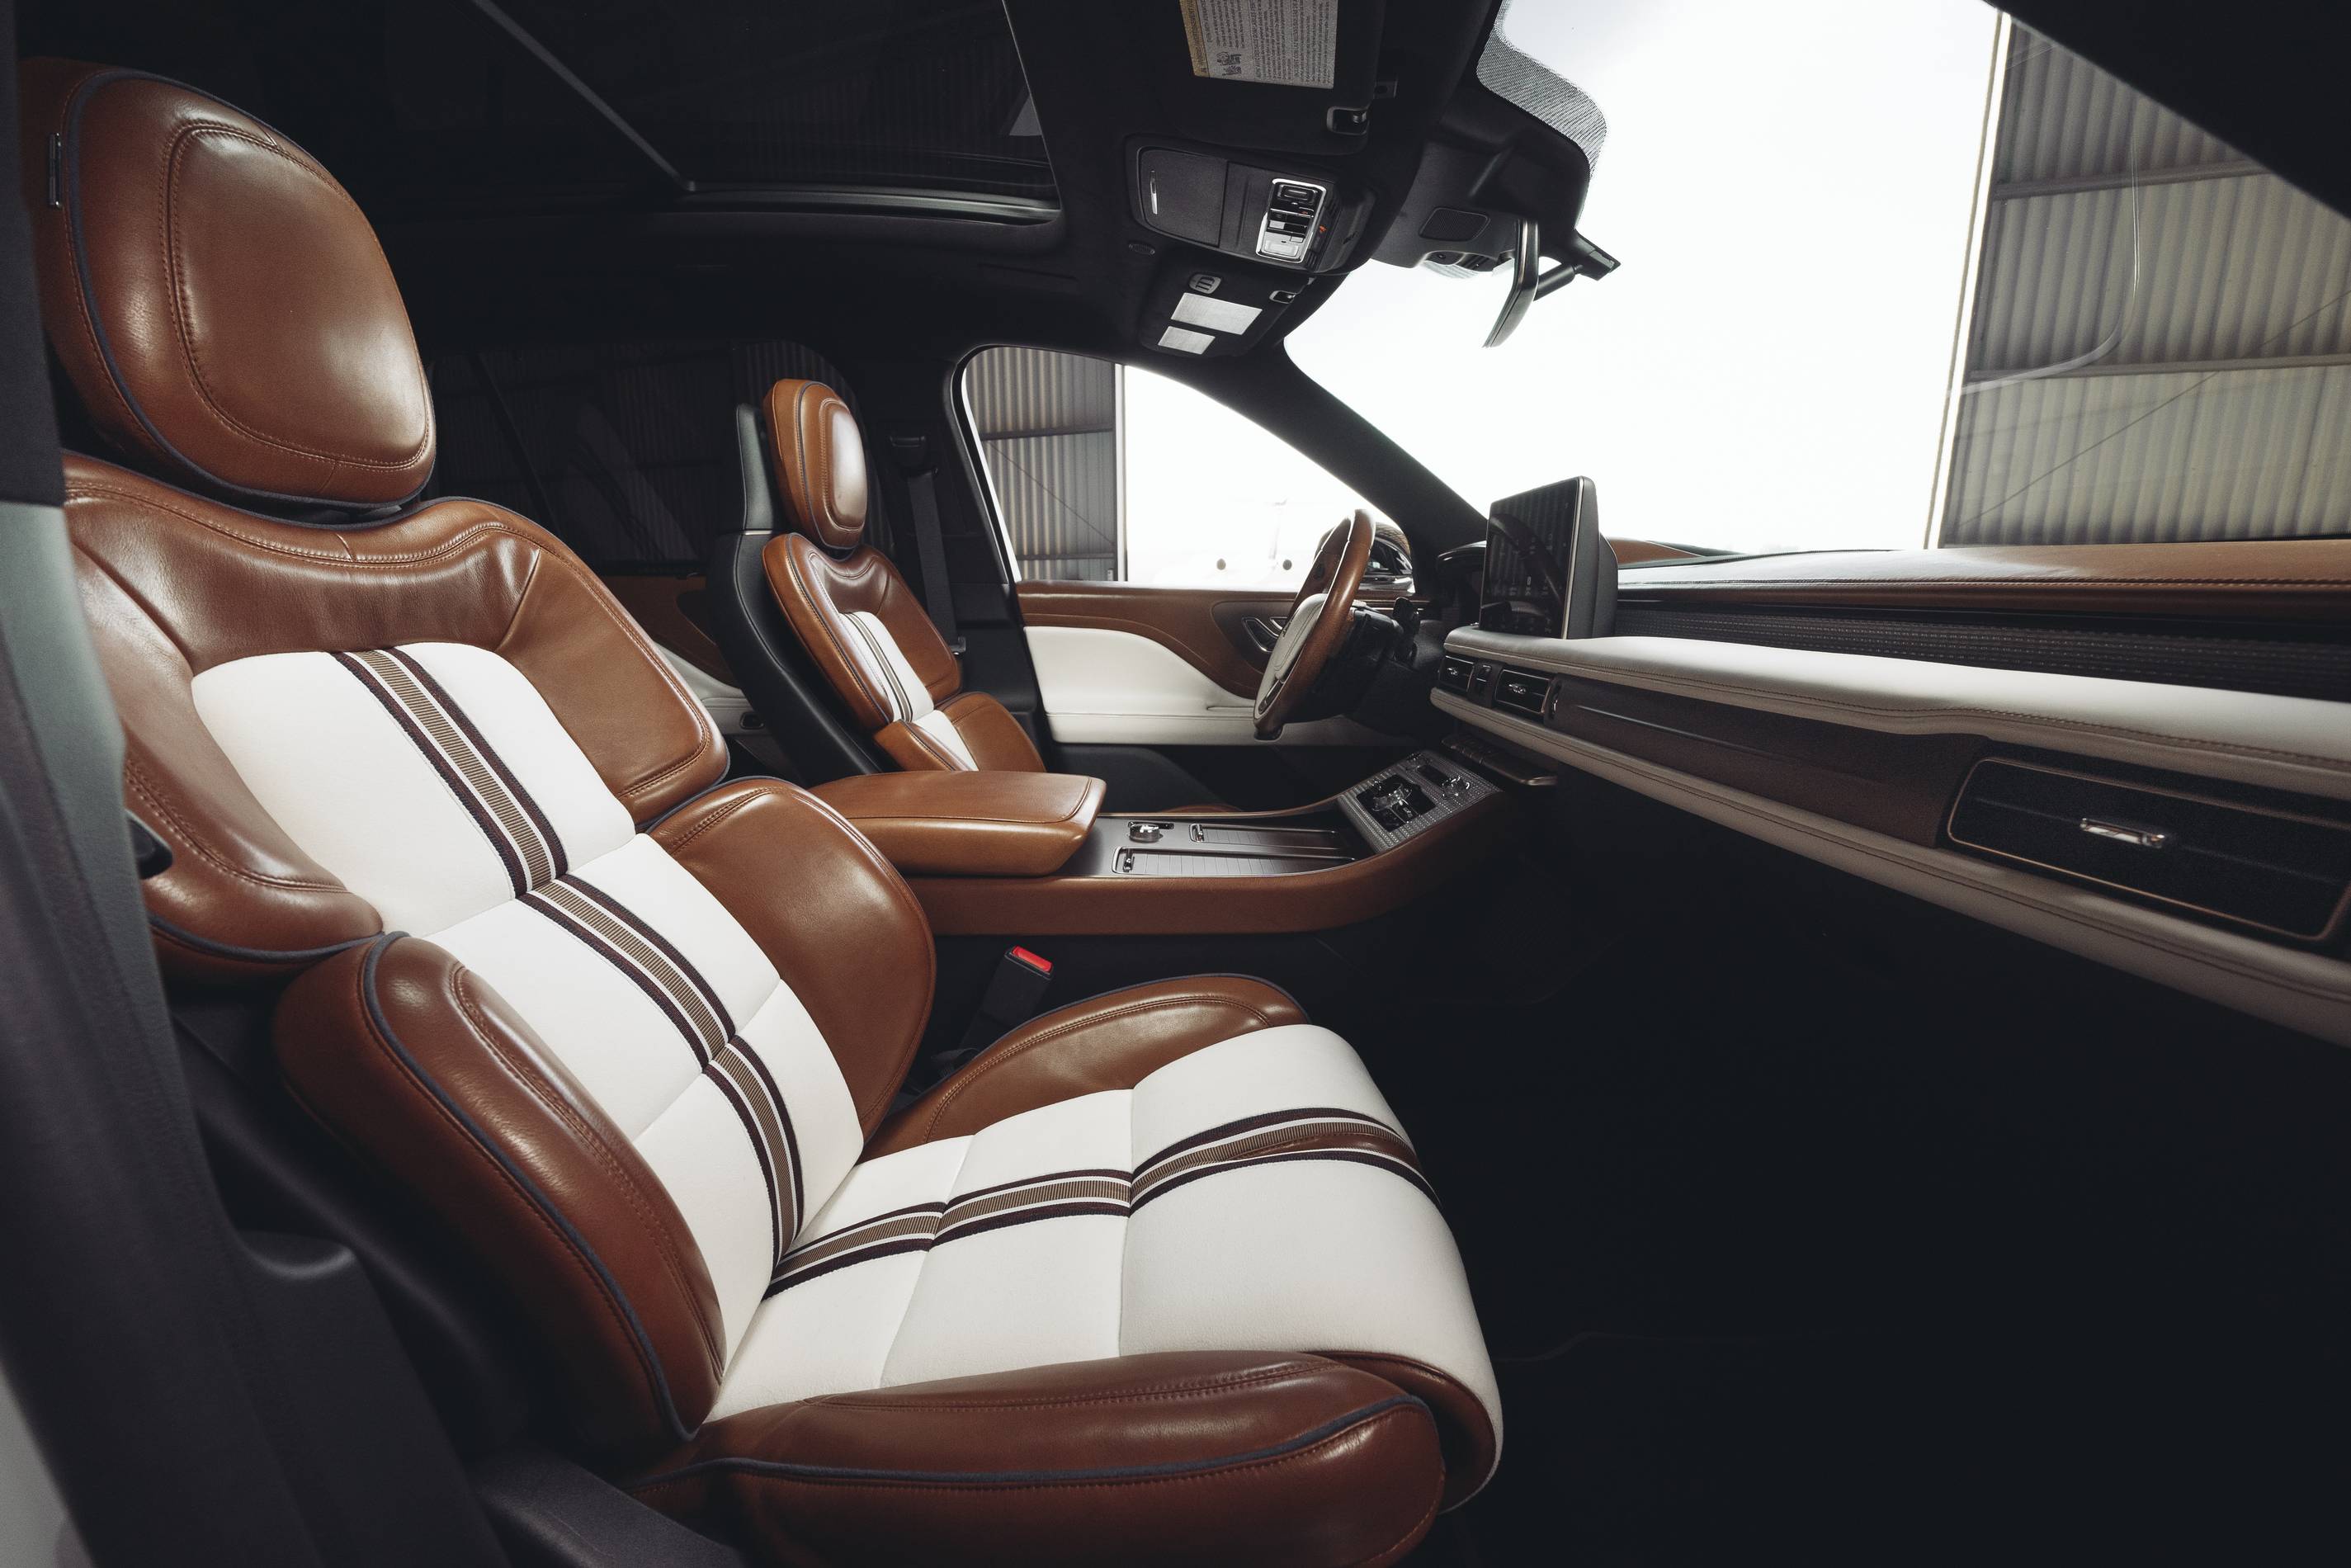 Lincoln Aviator Concept x Shinola collaboration